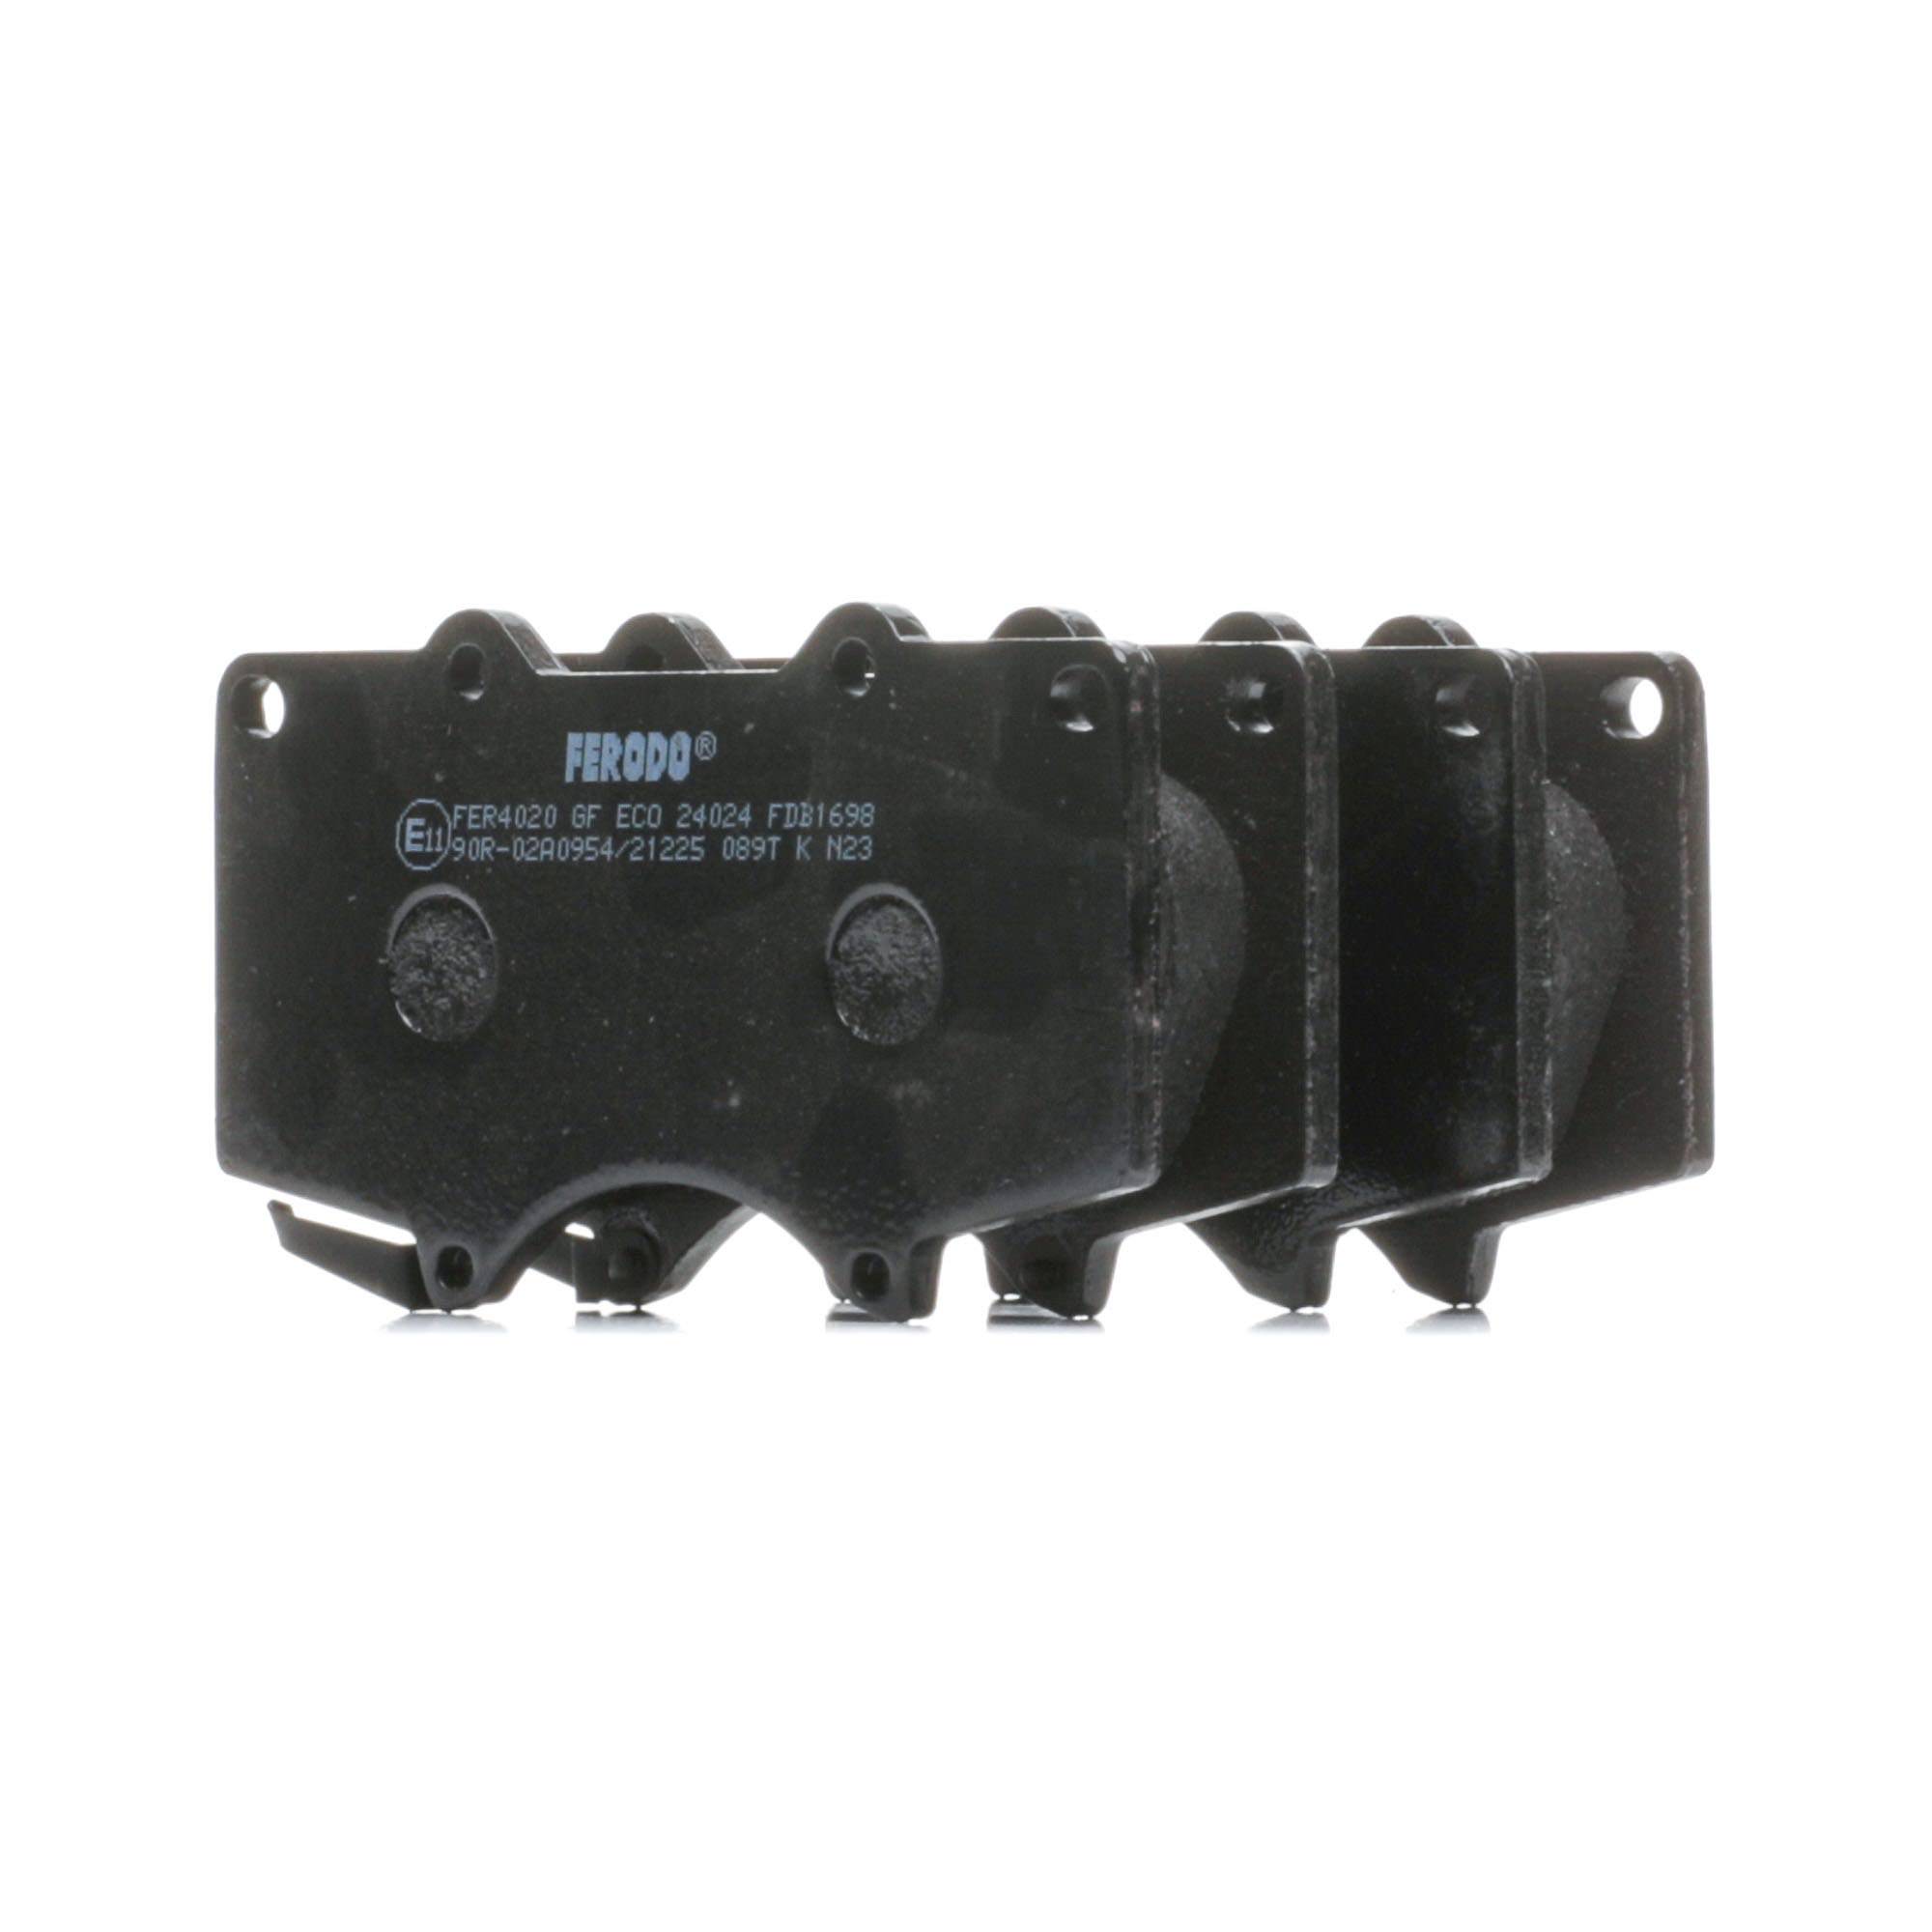 24024 FERODO PREMIER ECO FRICTION con segnalatore acustico usura, senza accessori Alt.: 77,1mm, Spessore: 17mm Pastiglie dei freni FDB1698 acquisto online